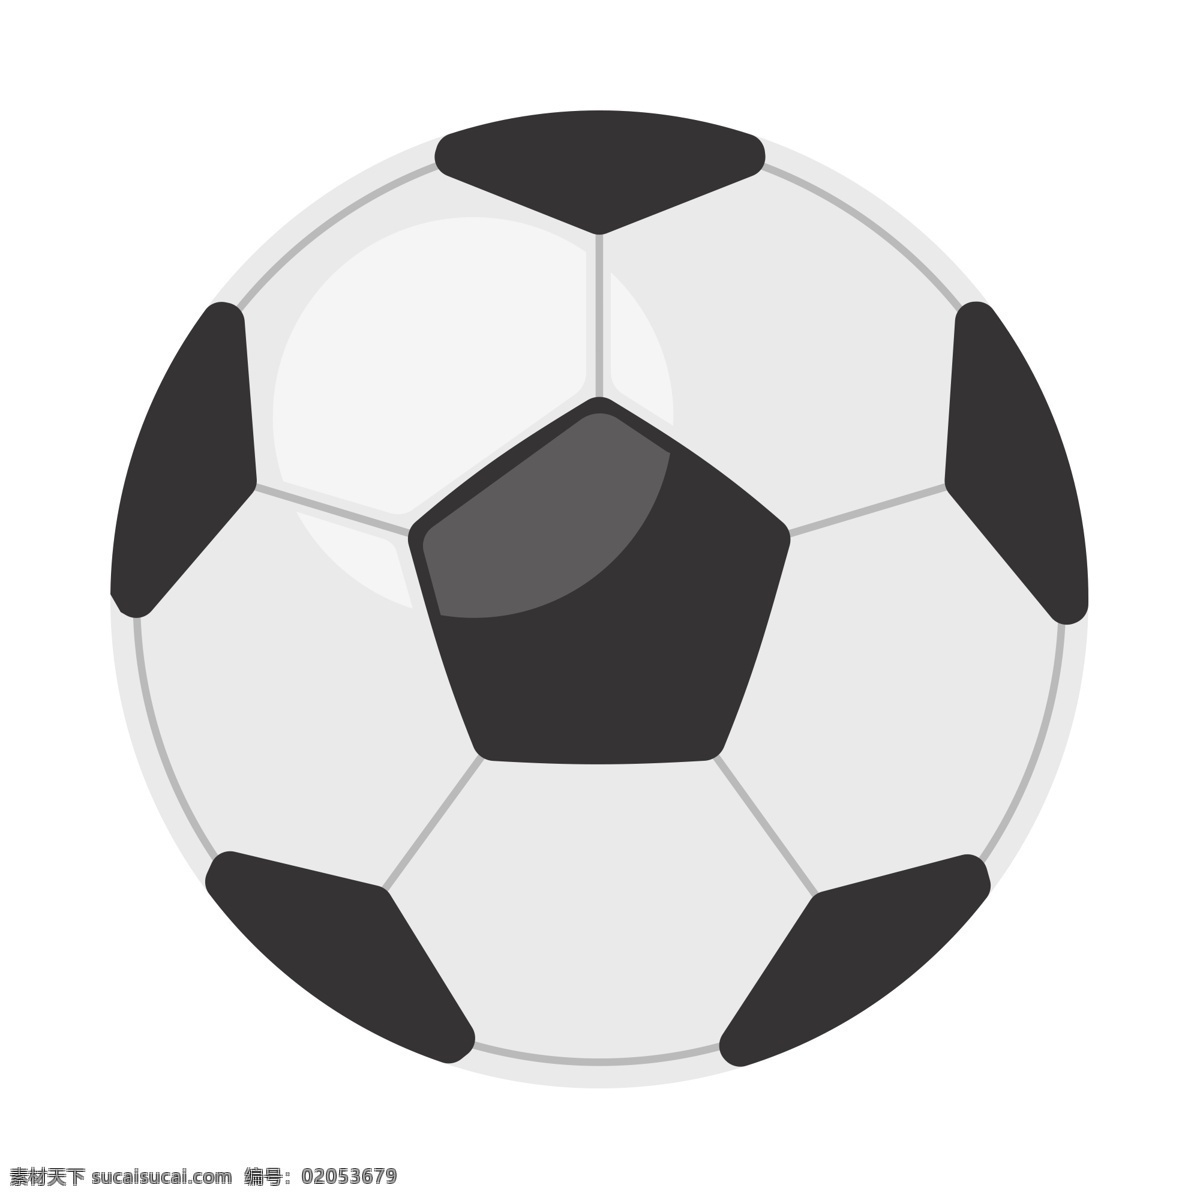 卡通 手绘 足球 免 抠 图 足球比赛 比赛对抗 队员 卡通手绘足球 踢球 比赛 比赛活动 足球联赛